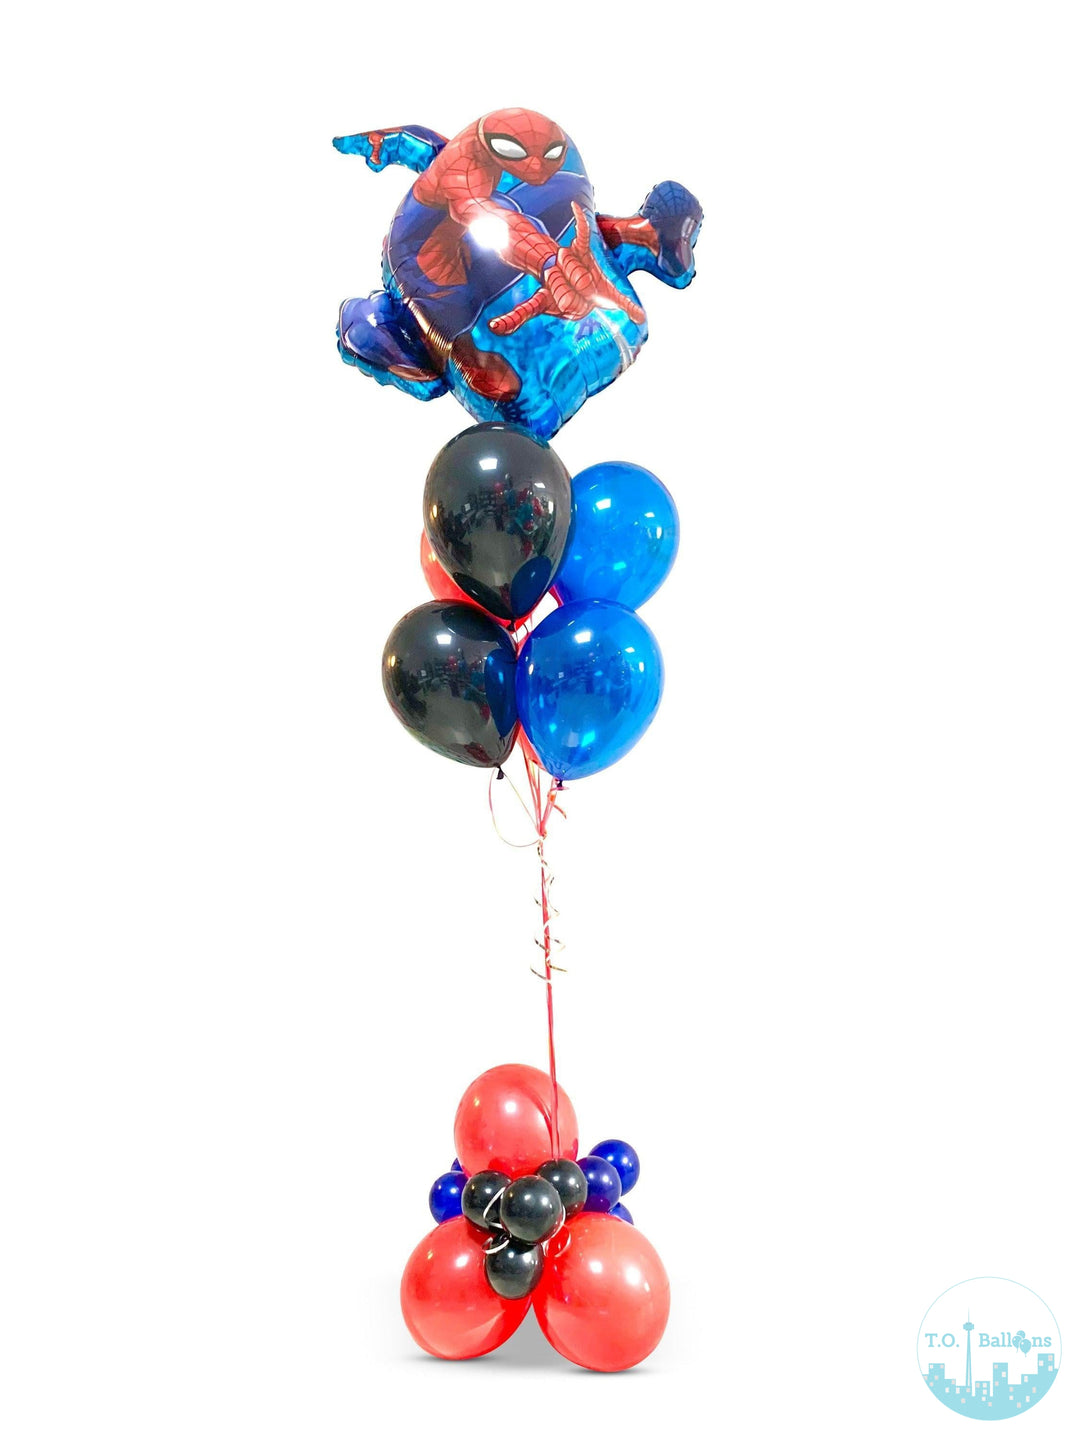 SPIDER-MAN Balloons T.O. Balloons 